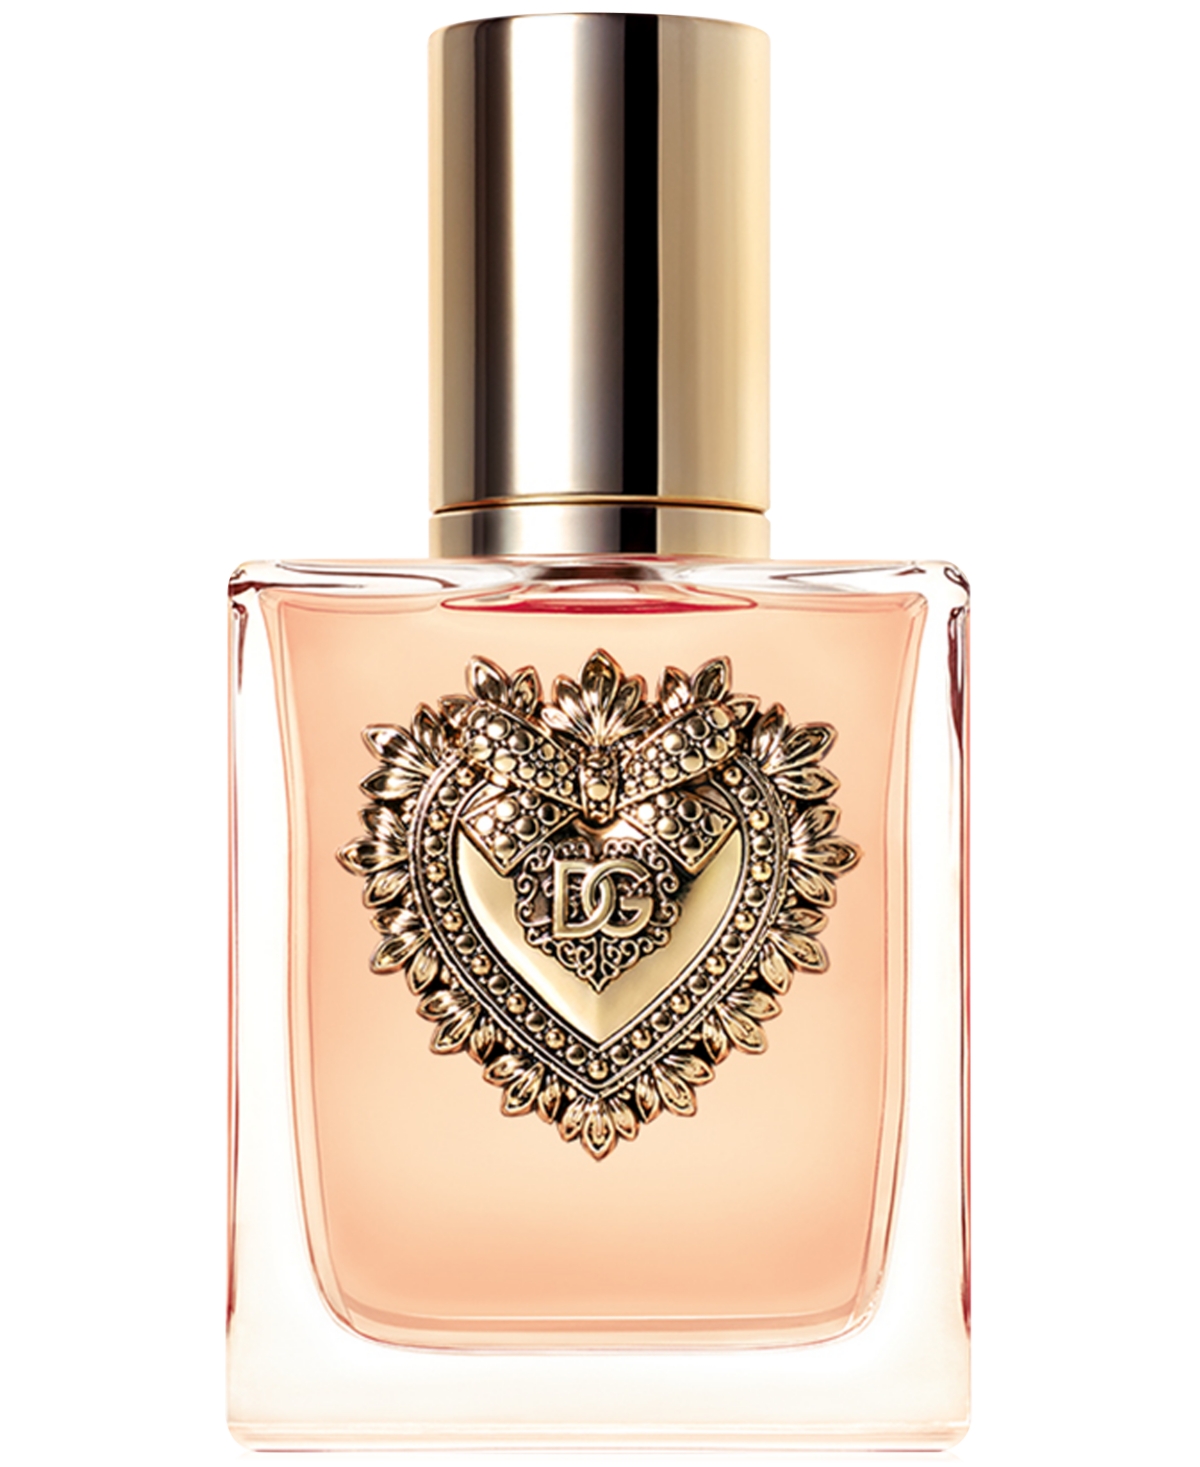 Dolce&Gabbana Devotion Eau de Parfum, 1.7 oz.